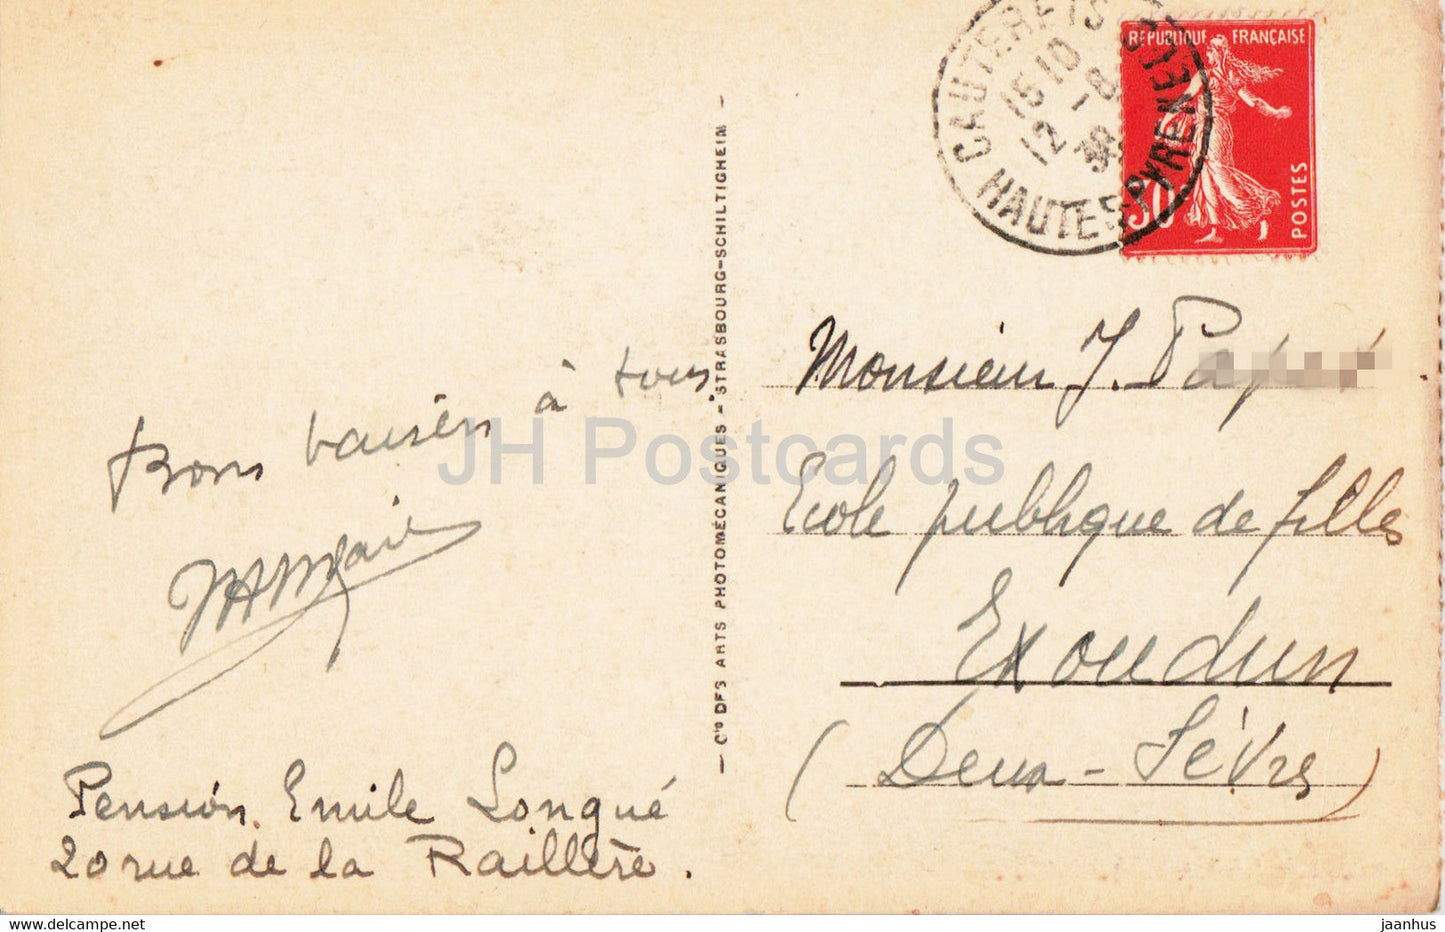 Cauterets - Vallée de Lutour - 103 - carte postale ancienne - 1938 - France - occasion